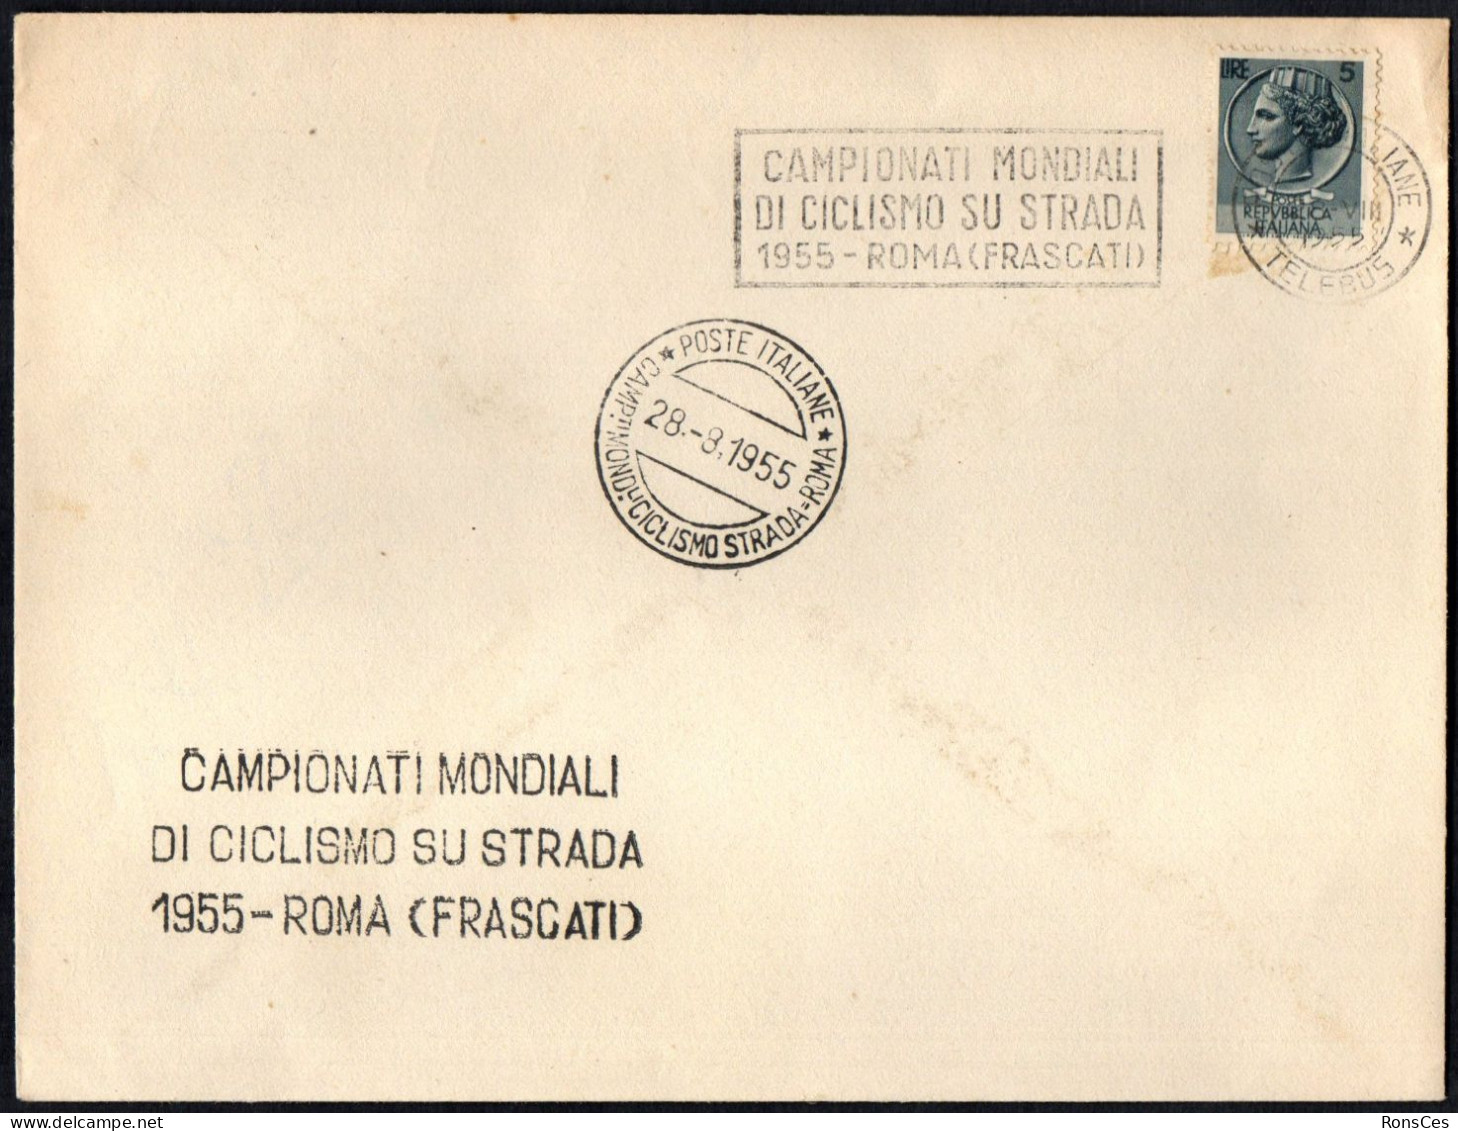 CYCLING - ITALIA ROMA 1955 - CAMPIONATI MONDIALI DI CICLISMO SU STRADA (FRASCATI) - A - Ciclismo